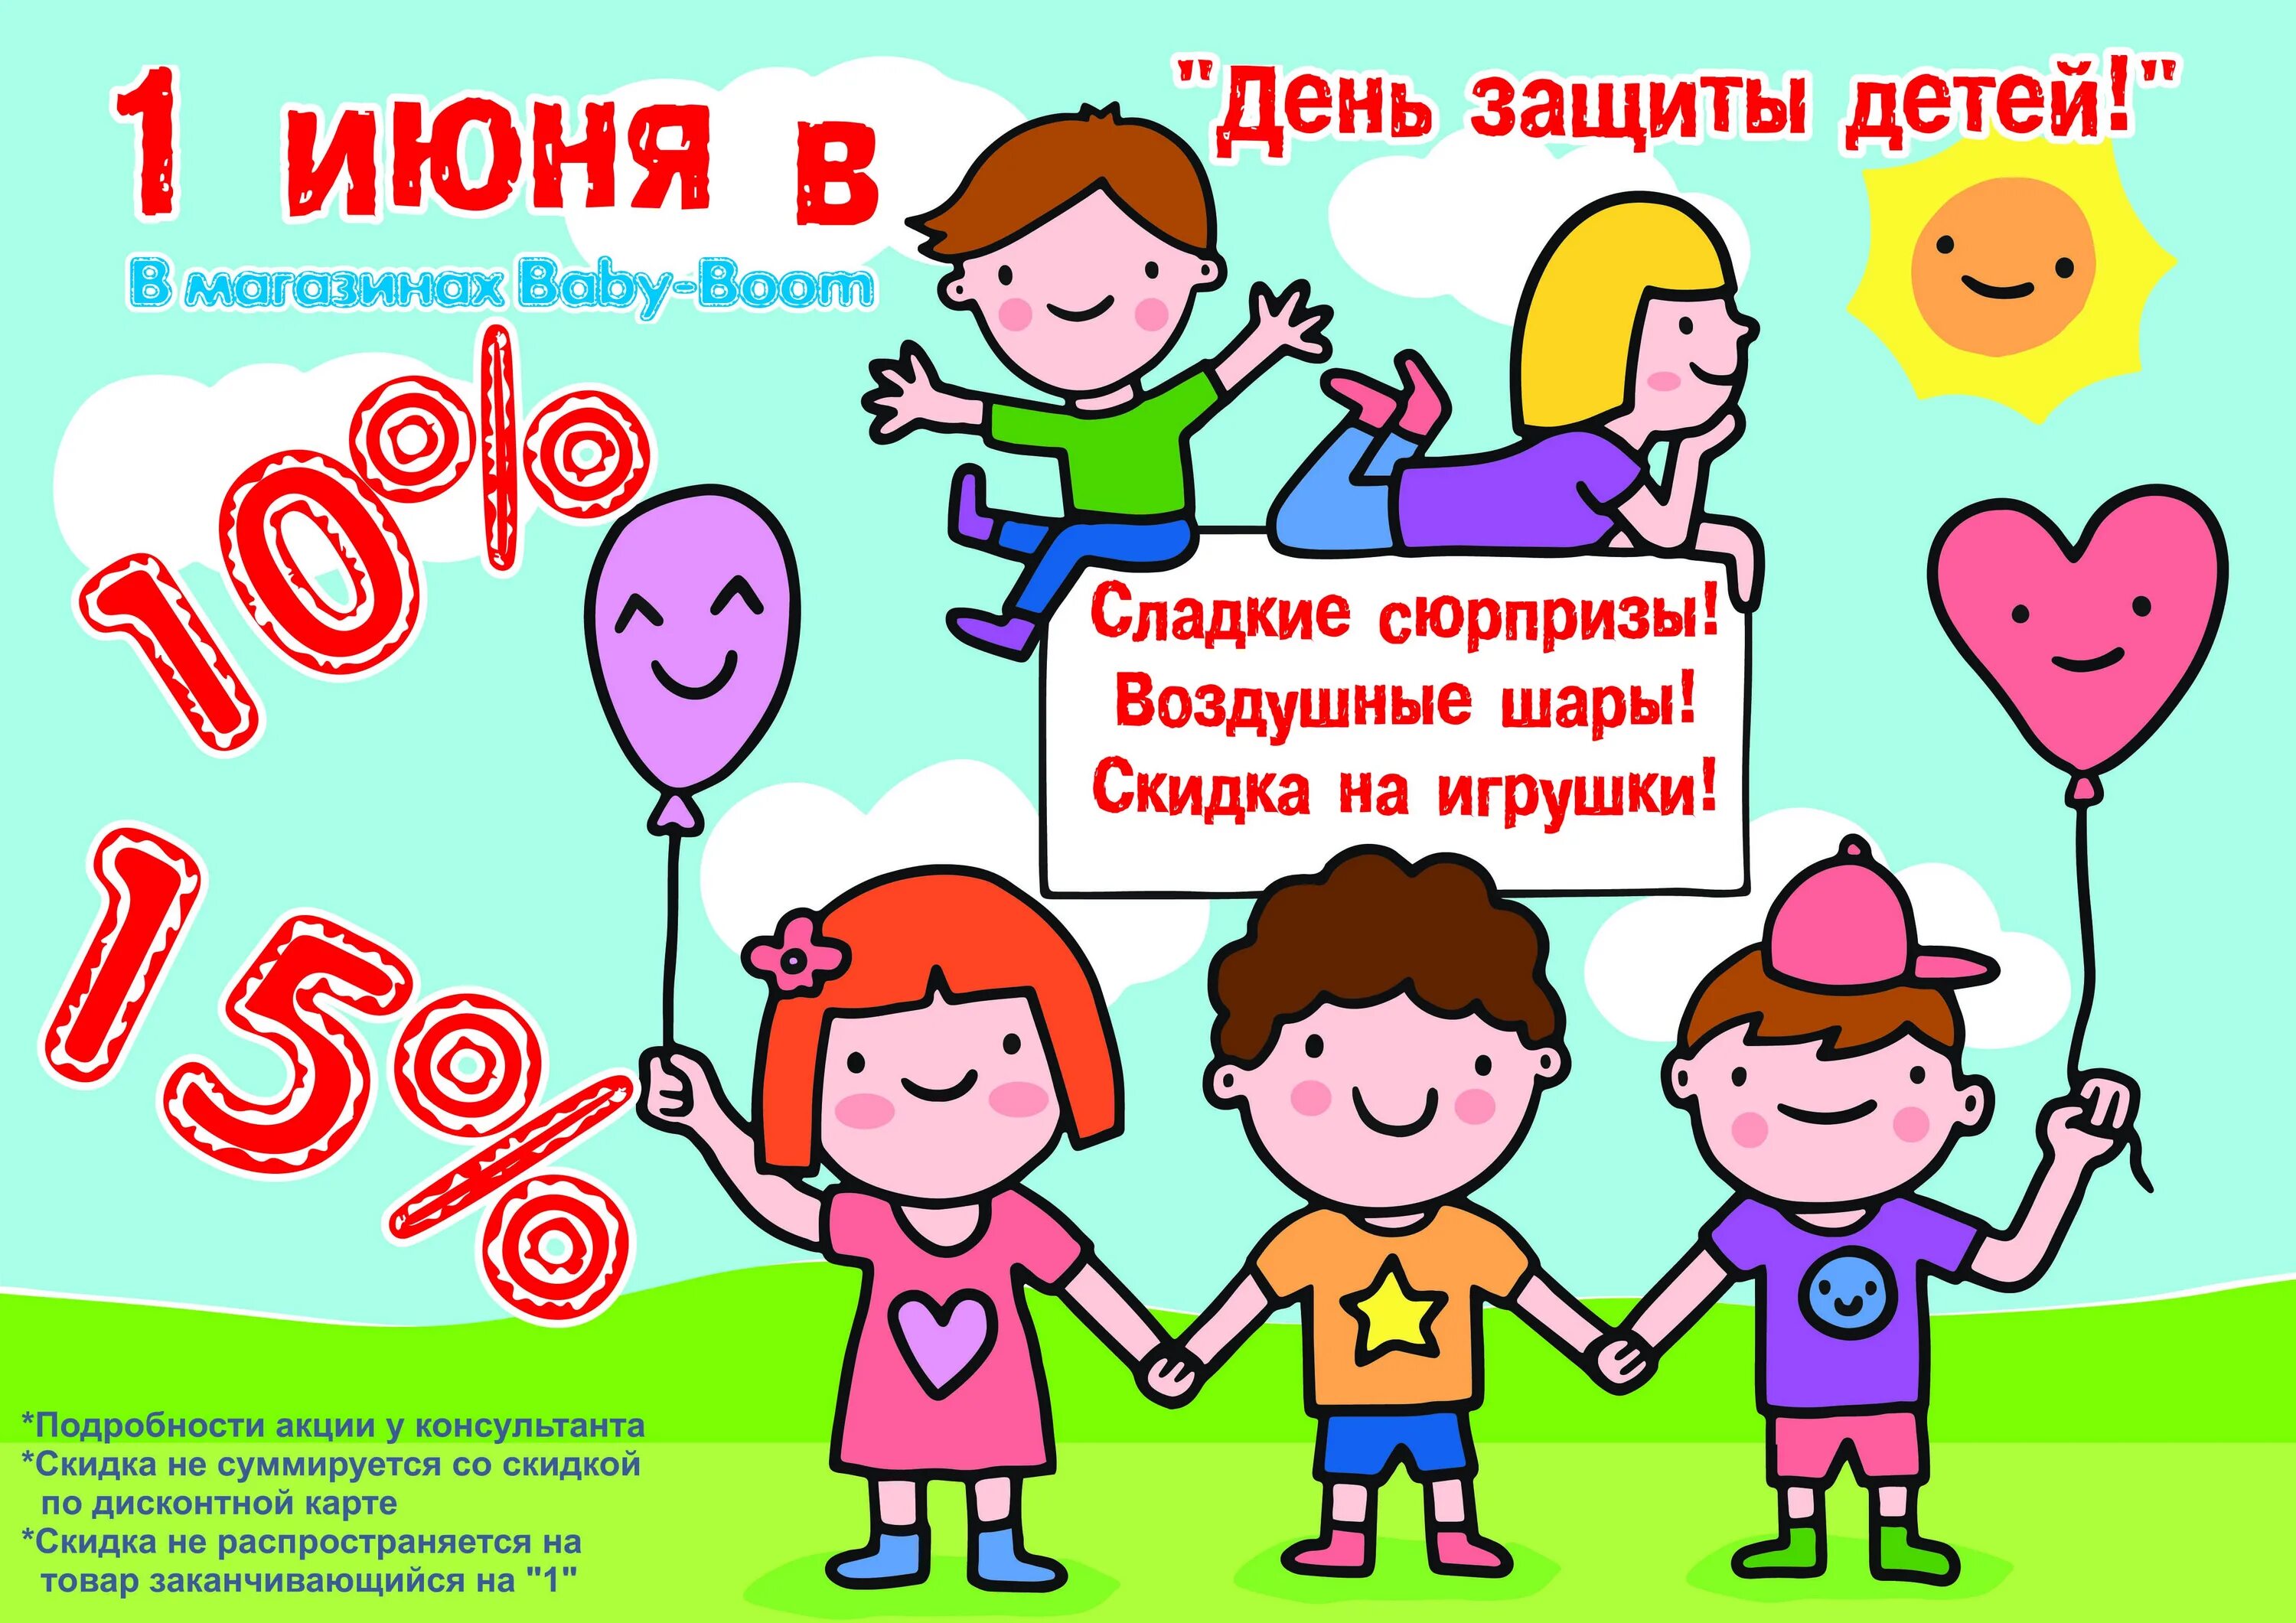 1 июня сайт. День защиты детей скидки. Акция ко Дню защиты детей. 1 Июня день защиты детей. Акции ко Дню защиты детей в магазинах.